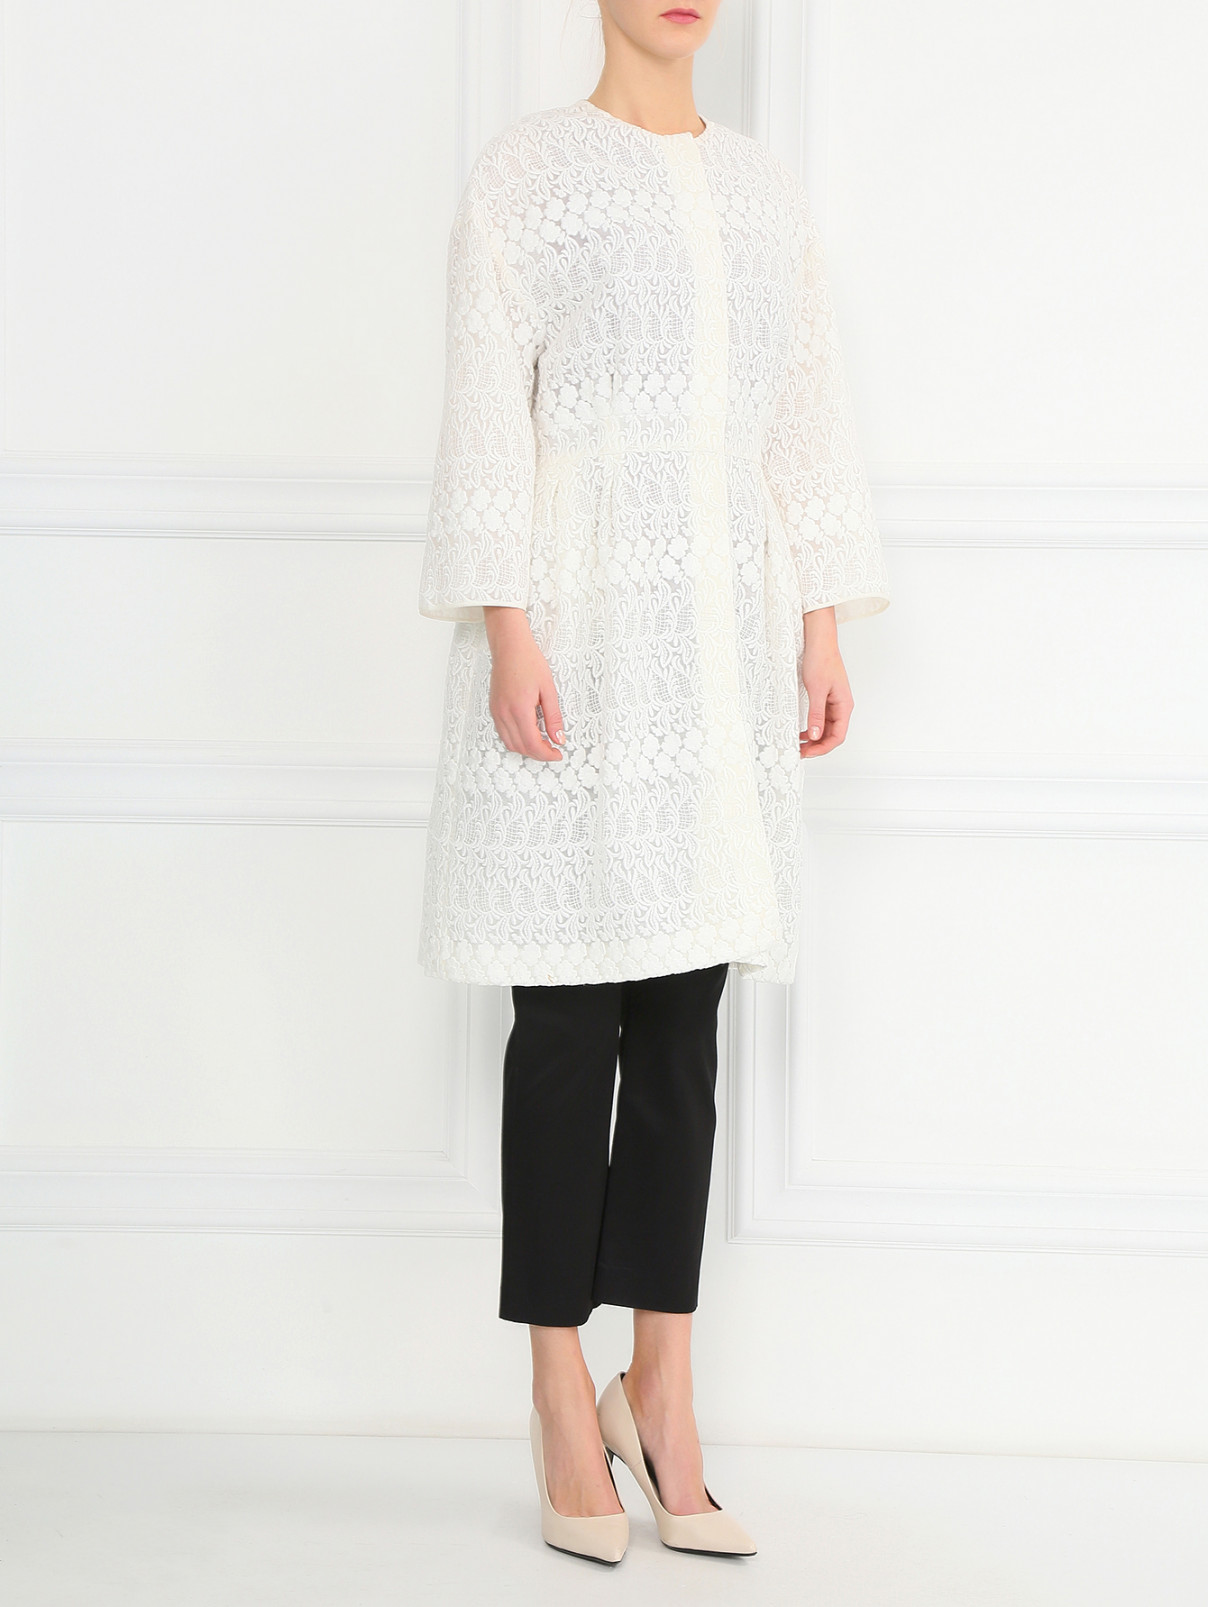 Легкое пальто из смешанного хлопка с вышивкой Giambattista Valli  –  Модель Общий вид  – Цвет:  Белый